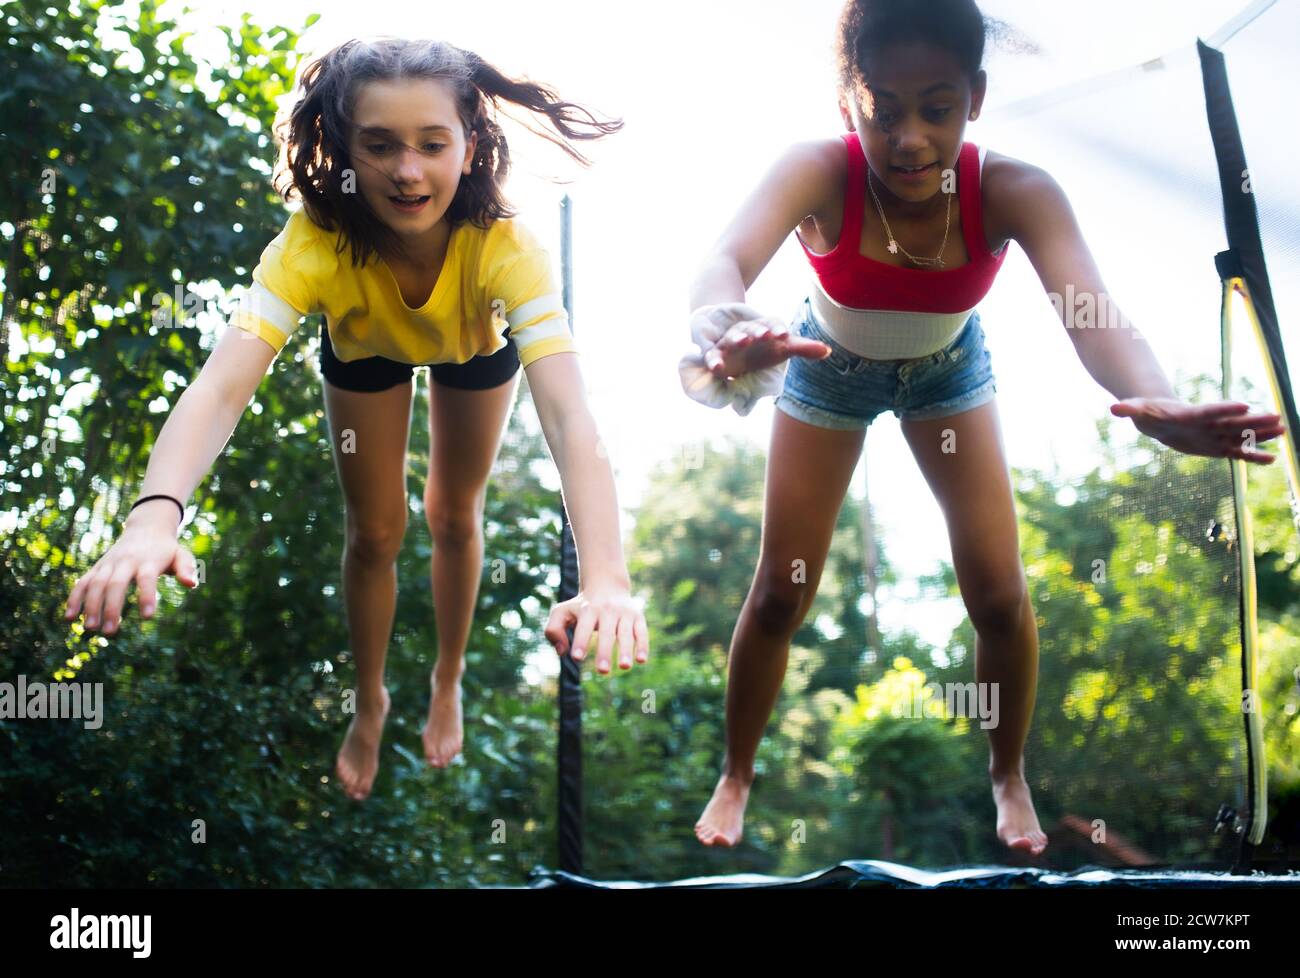 Frontansicht der jungen Teenager Mädchen Freunde im Freien im Garten, springen auf Trampolin. Stockfoto